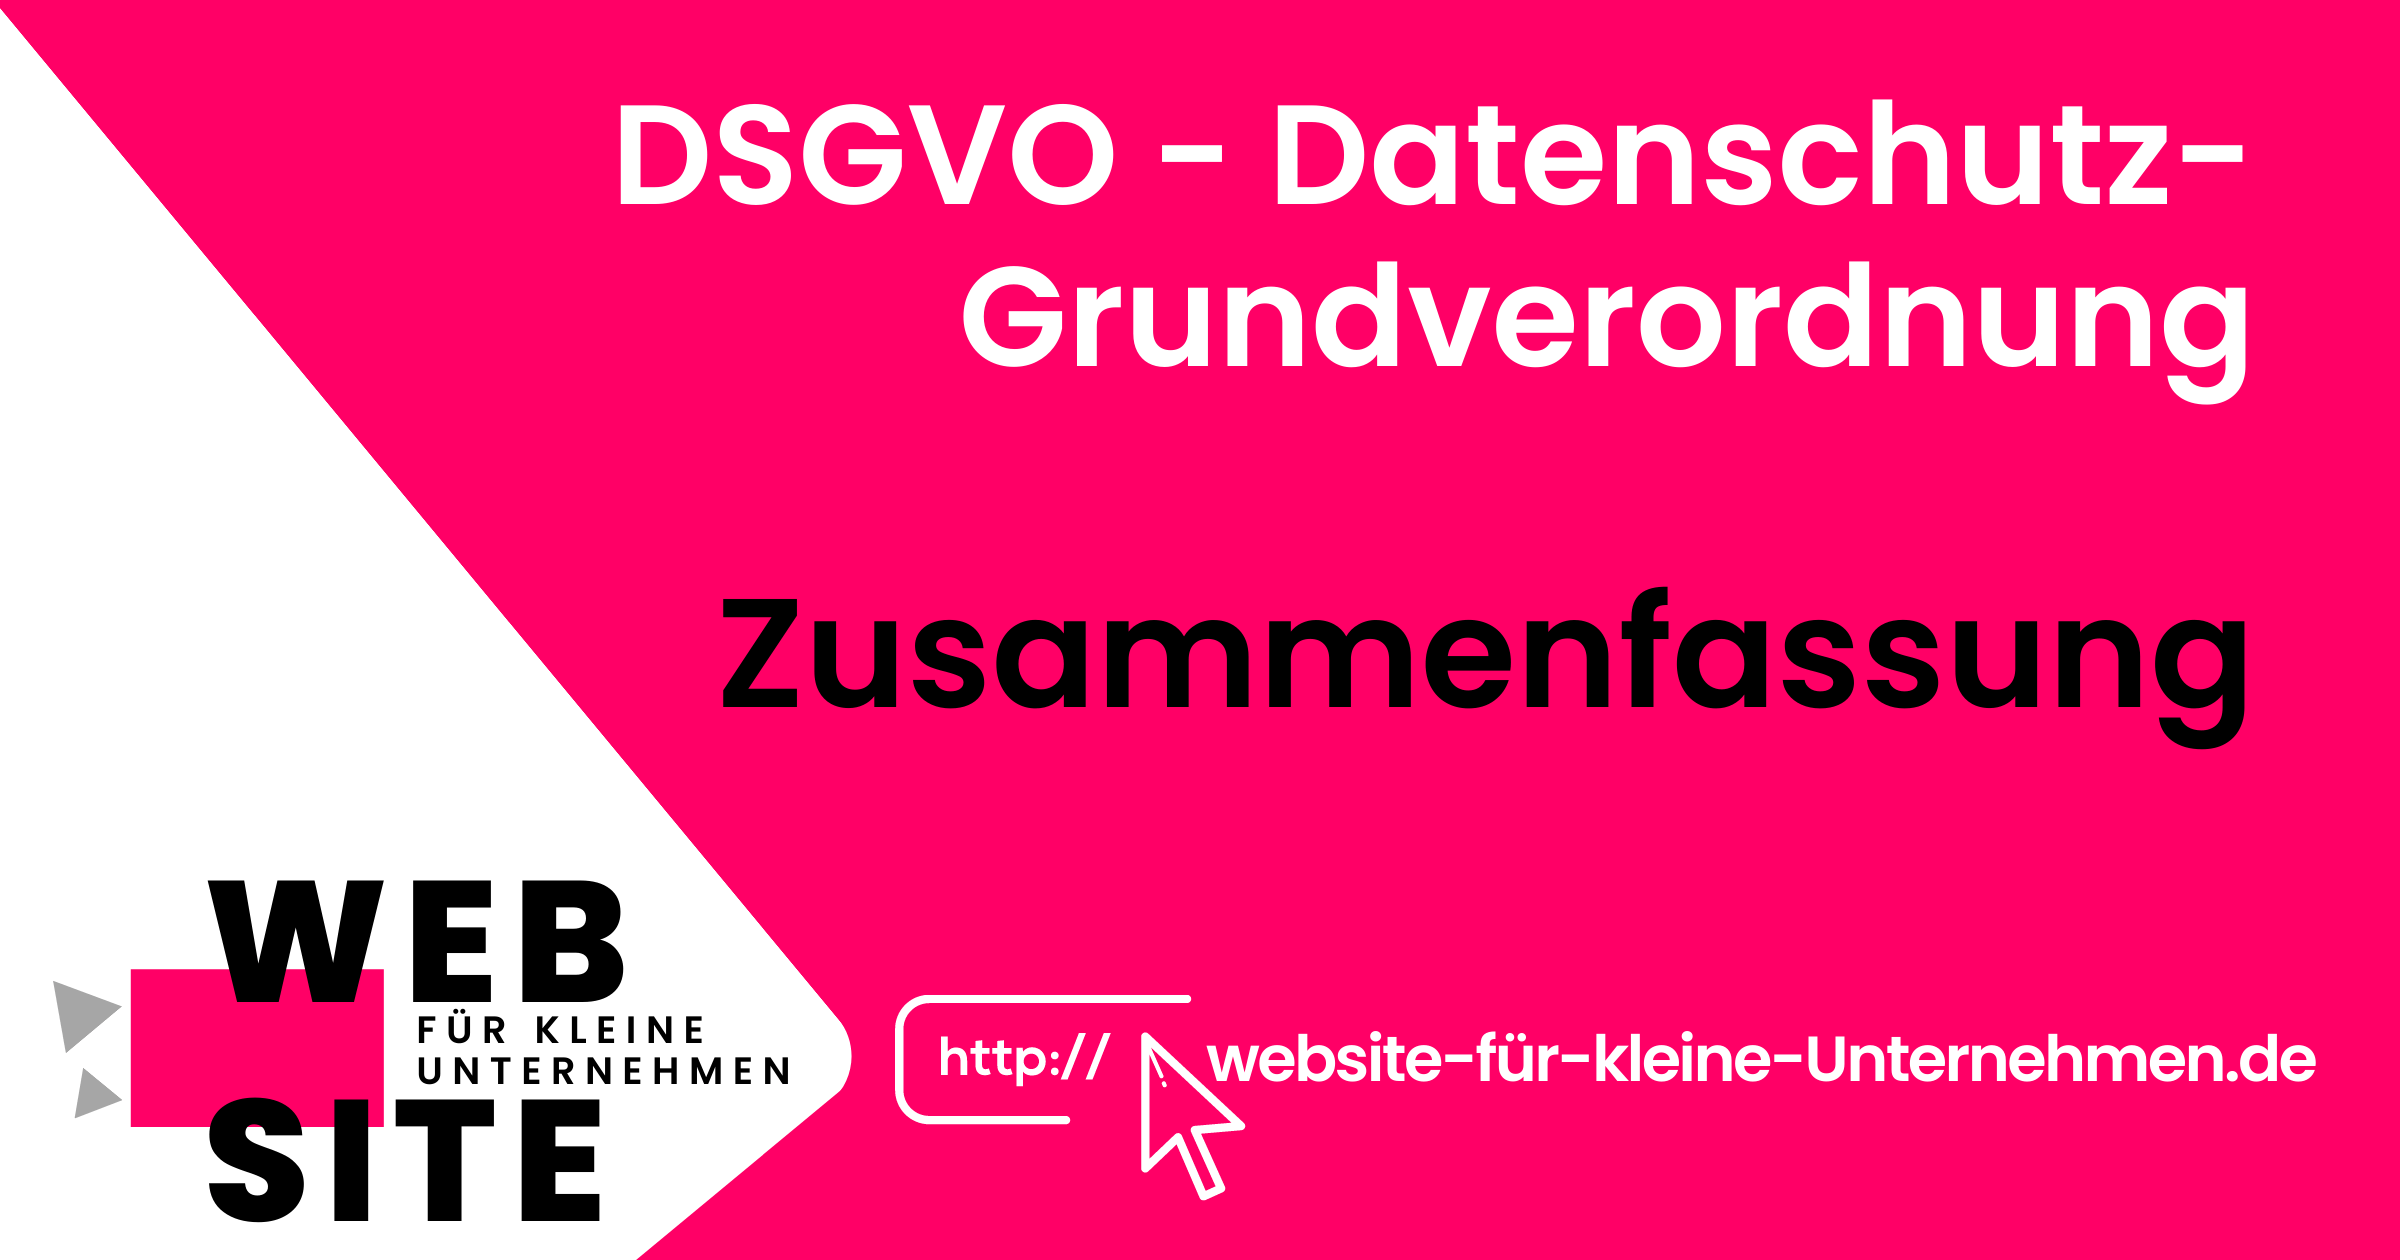 Website kleine Unternehmen - Datenschutz-Grundverordnung DSGVO Zusammenfassung - Featured Image